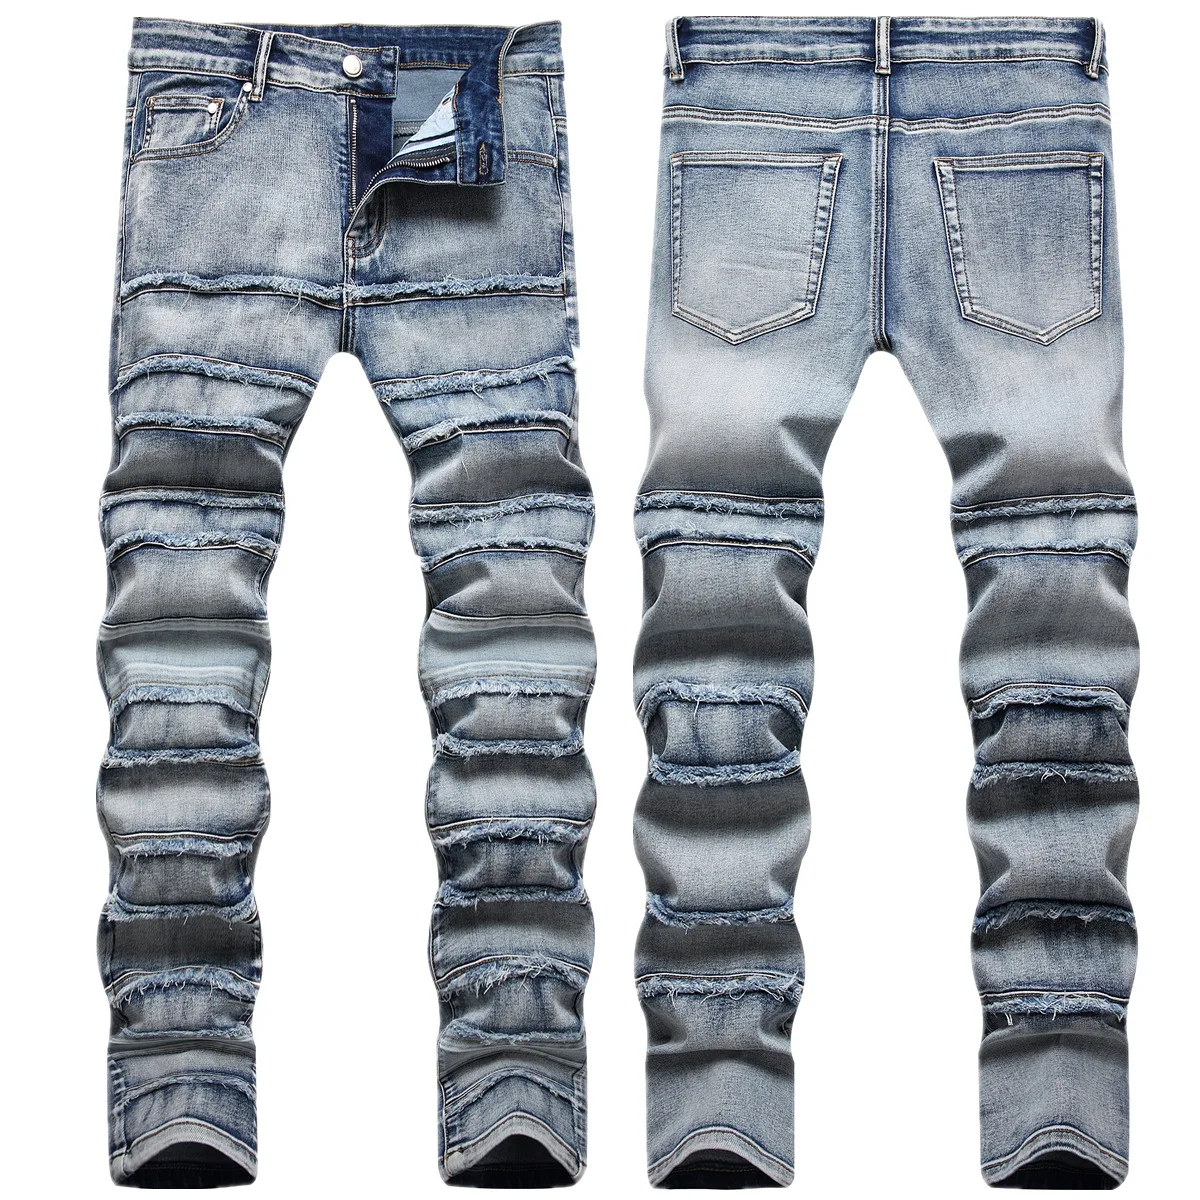 jeans INS hip-hop crânio rua tendência homens maré alta rua furo stretch jeans pé pequeno de rock da maré Slim explosão bordado calças Imagem 1